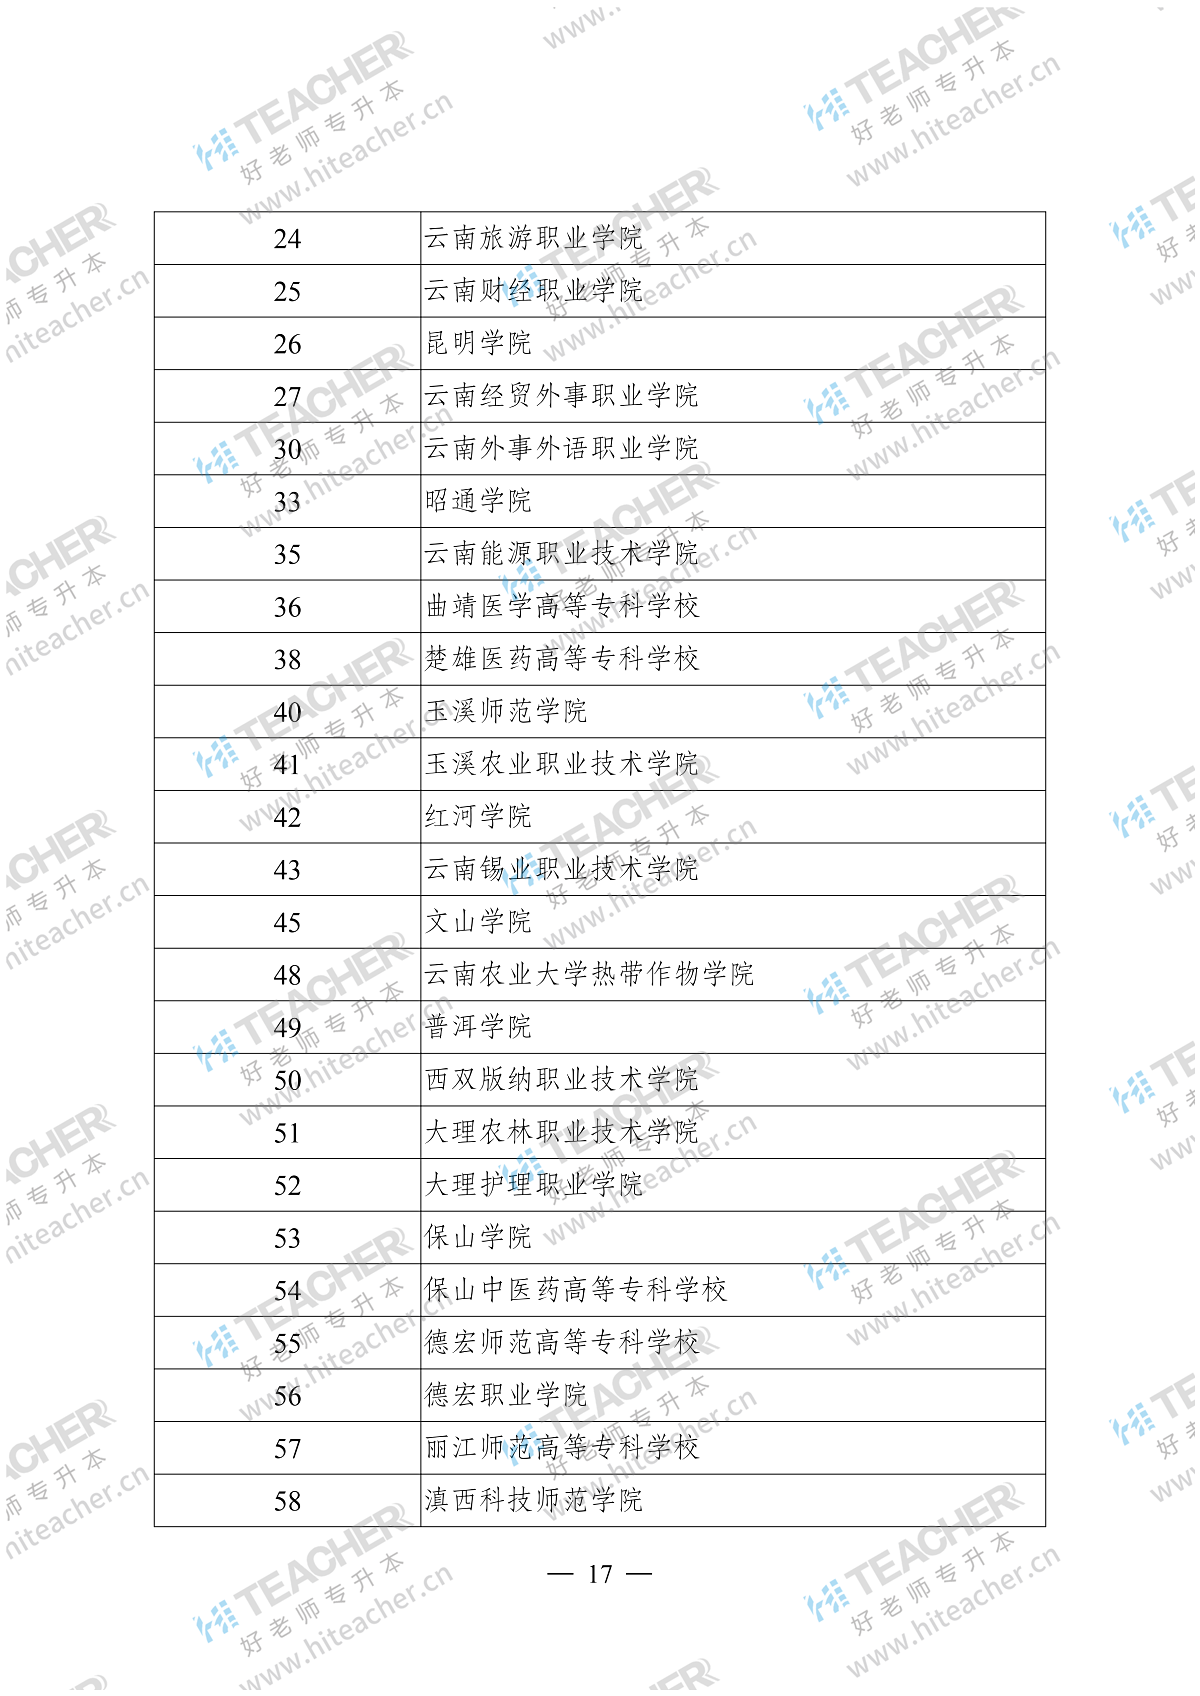 云南省招生考试院关于 2019 年普通高等院专升本录取普通批次第四次征集志愿的通知